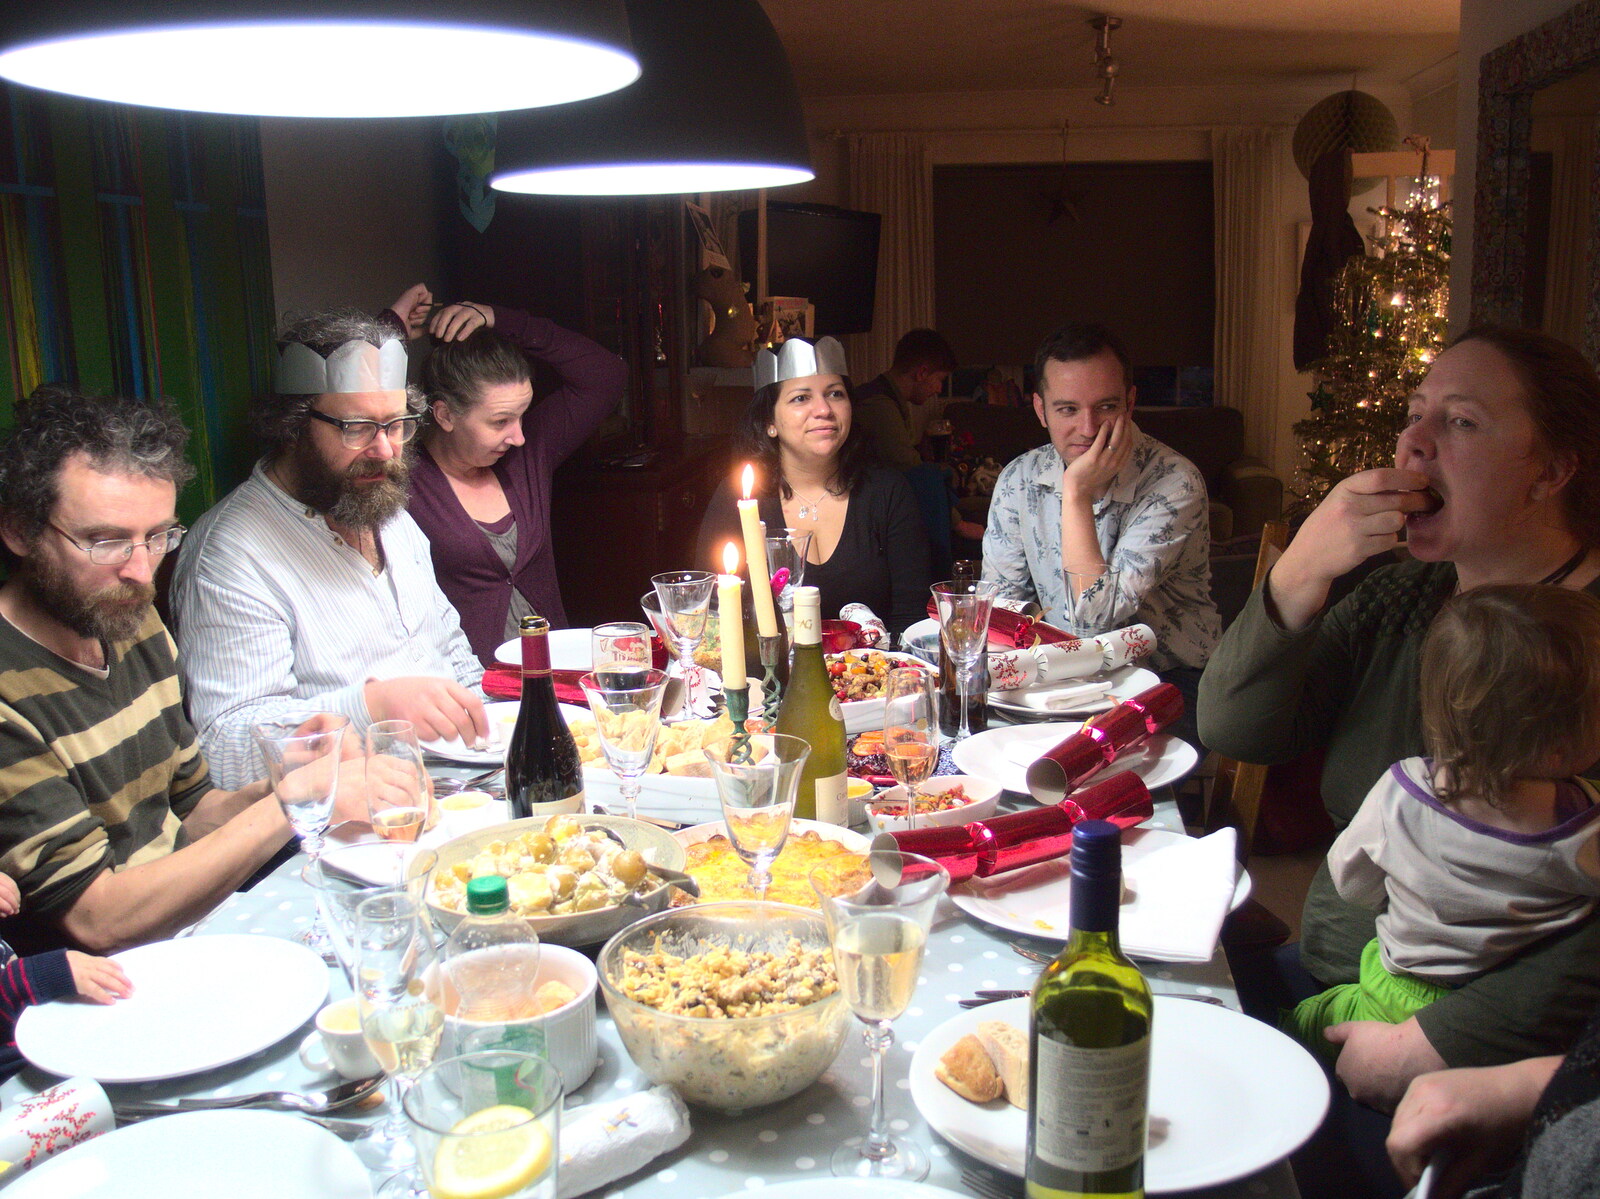 Dinner conversation from Christmas in Blackrock and St. Stephen's in Ballybrack, Dublin, Ireland - 25th December 2015